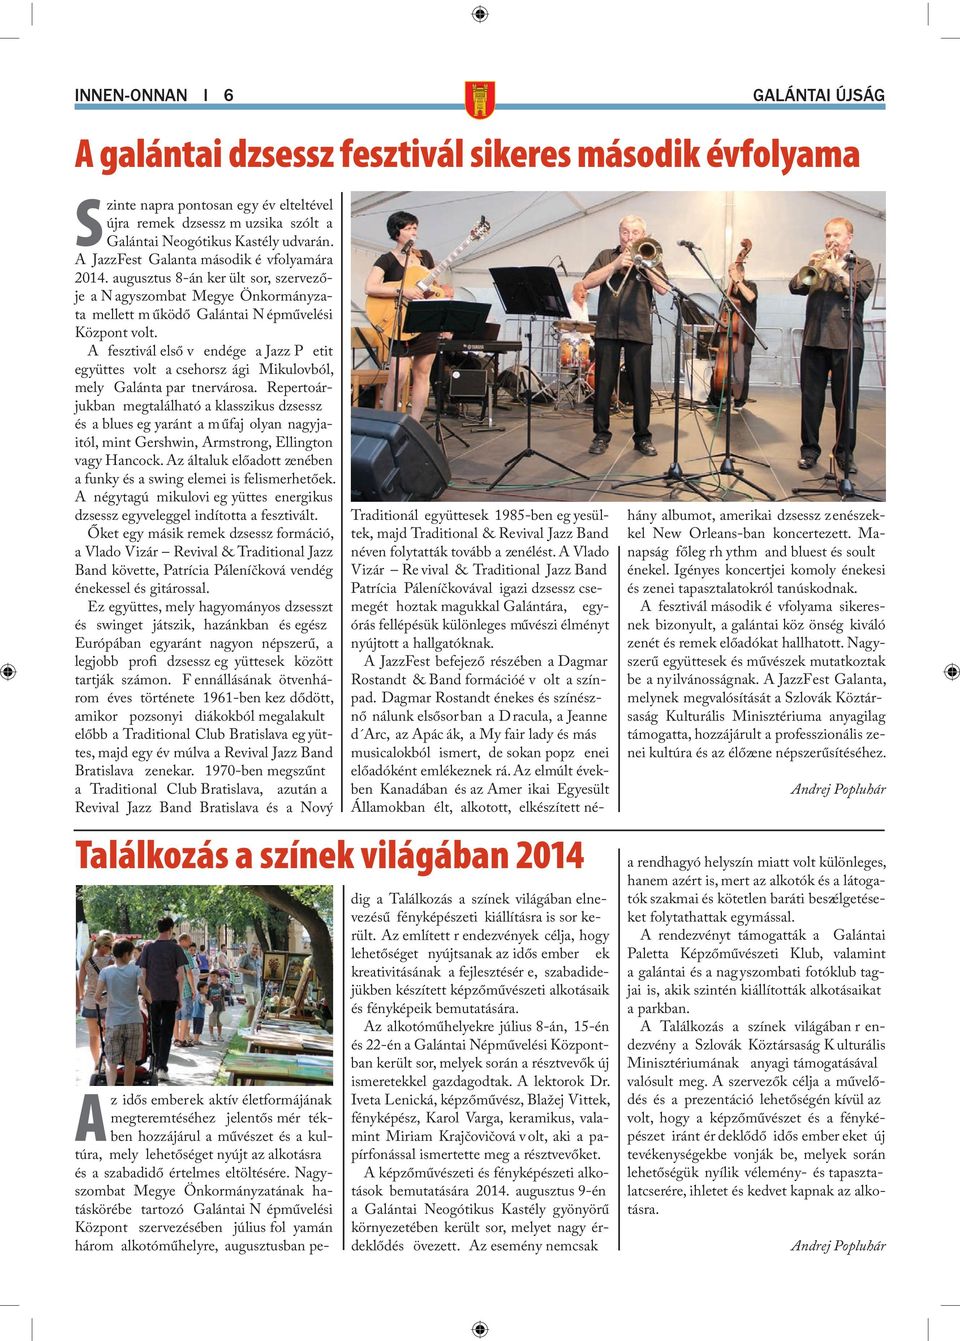 A fesztivál első v endége a Jazz P etit együttes volt a csehorsz ági Mikulovból, mely Galánta par tnervárosa.